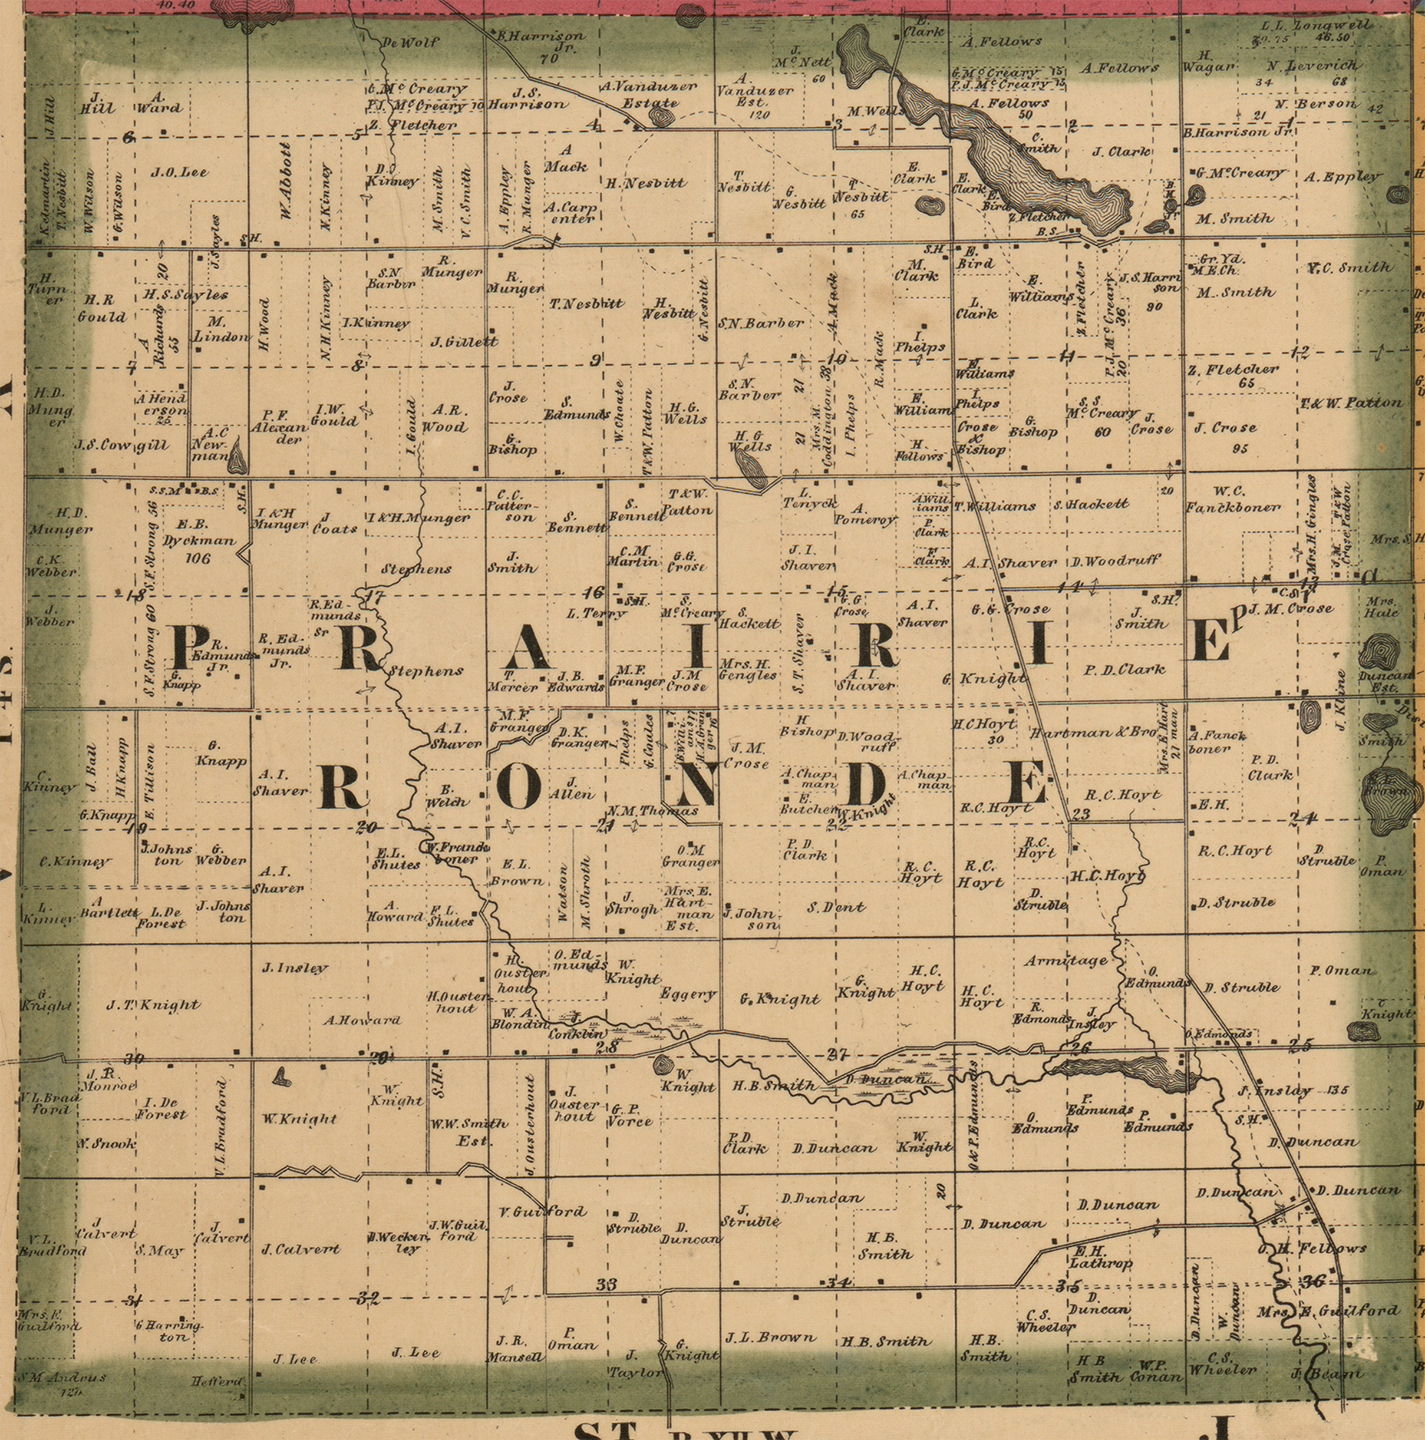 1861 PrairieRonde Township Michigan landownership map